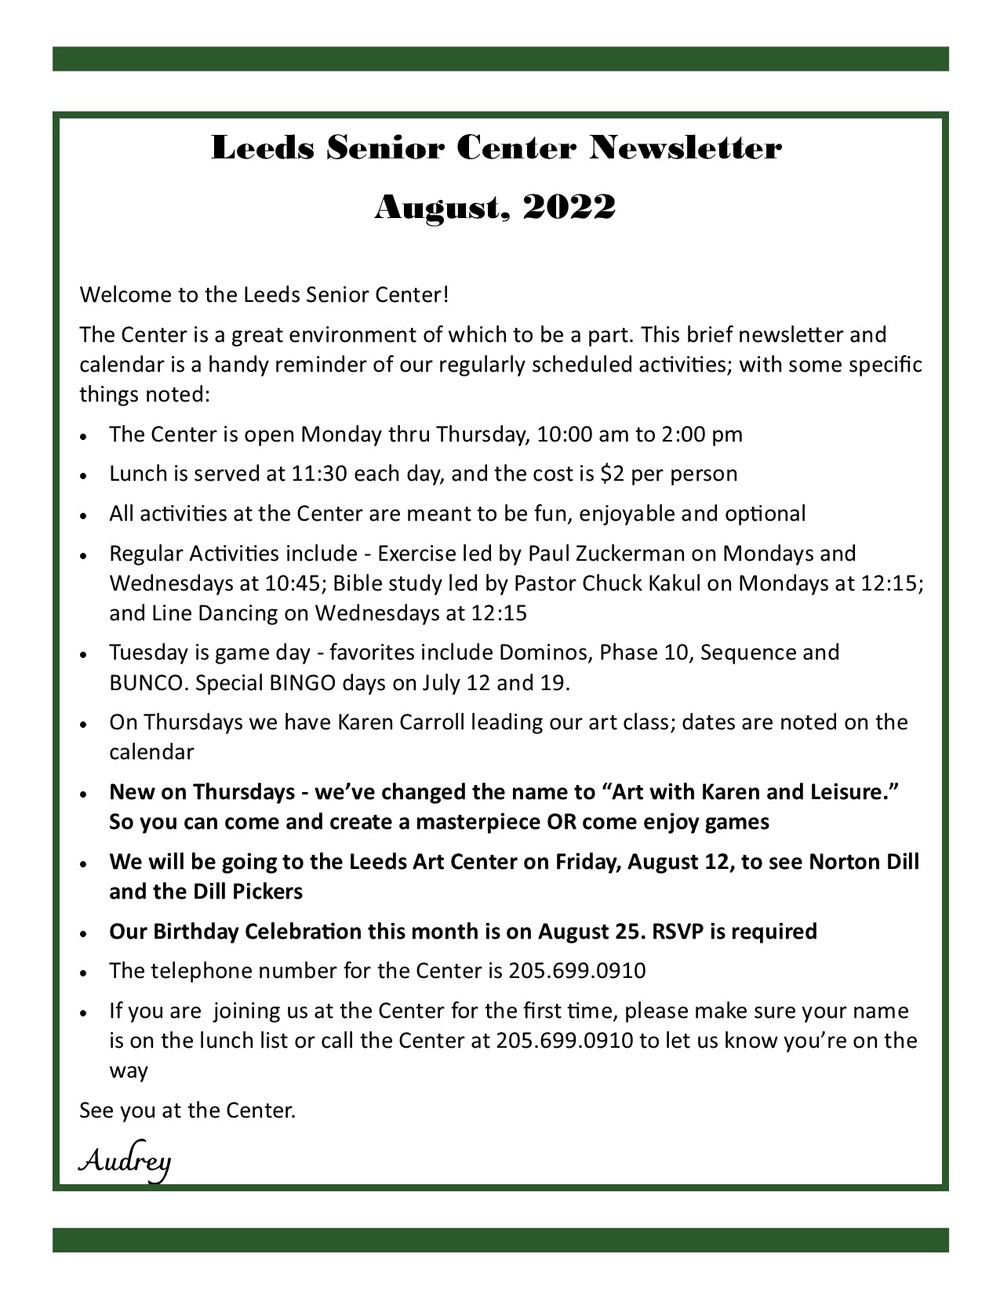 Senior Newsletter August 2022_1000